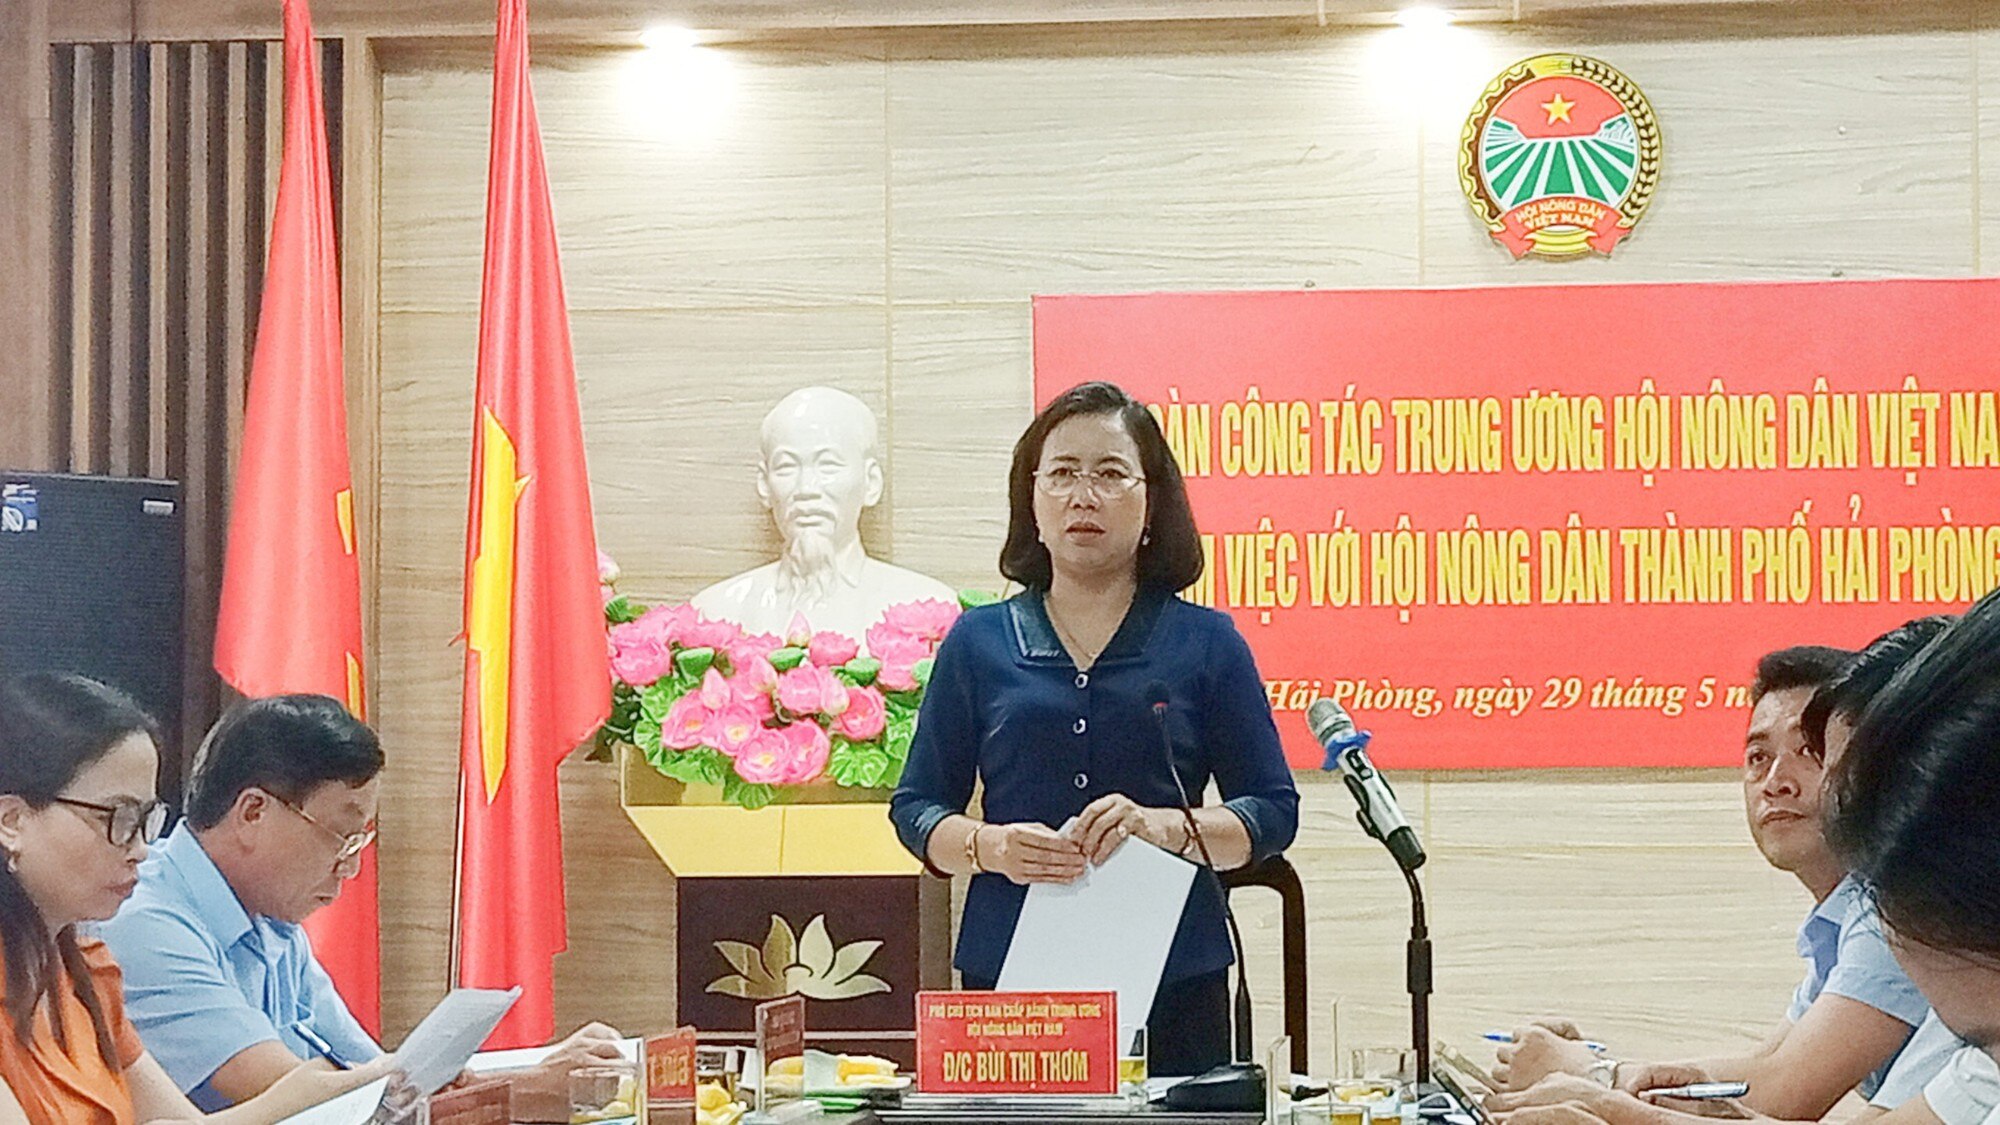 Phó Chủ tịch Bùi Thị Thơm và đoàn công tác TƯ Hội NDVN làm việc với Hội Nông dân Hải Phòng- Ảnh 2.